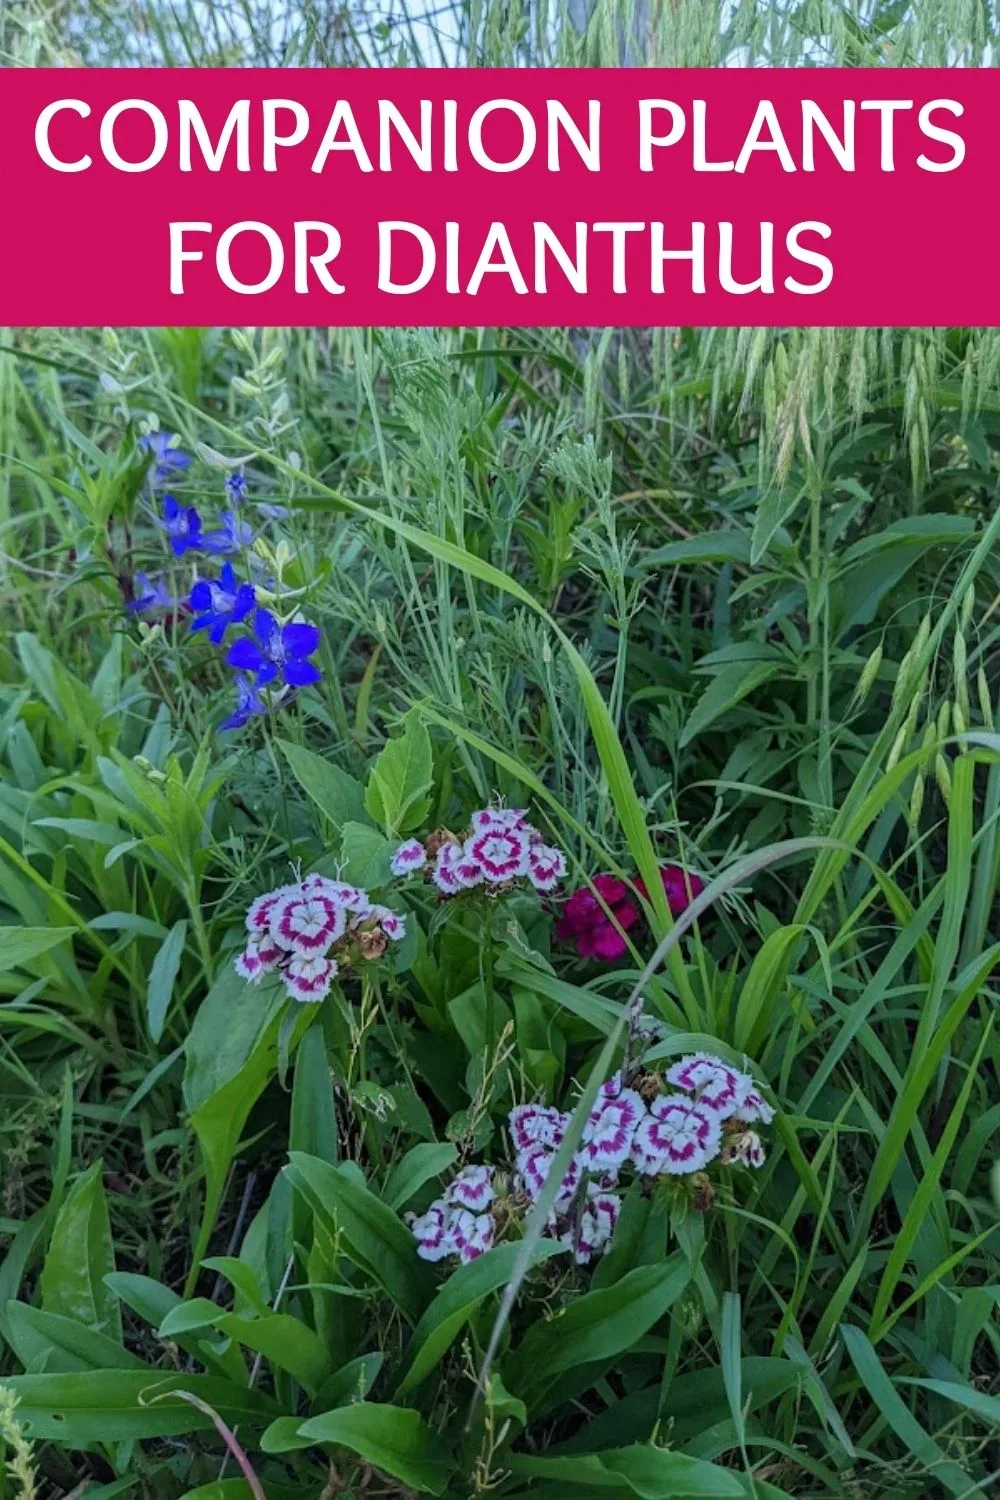 Companion plants for dianthus